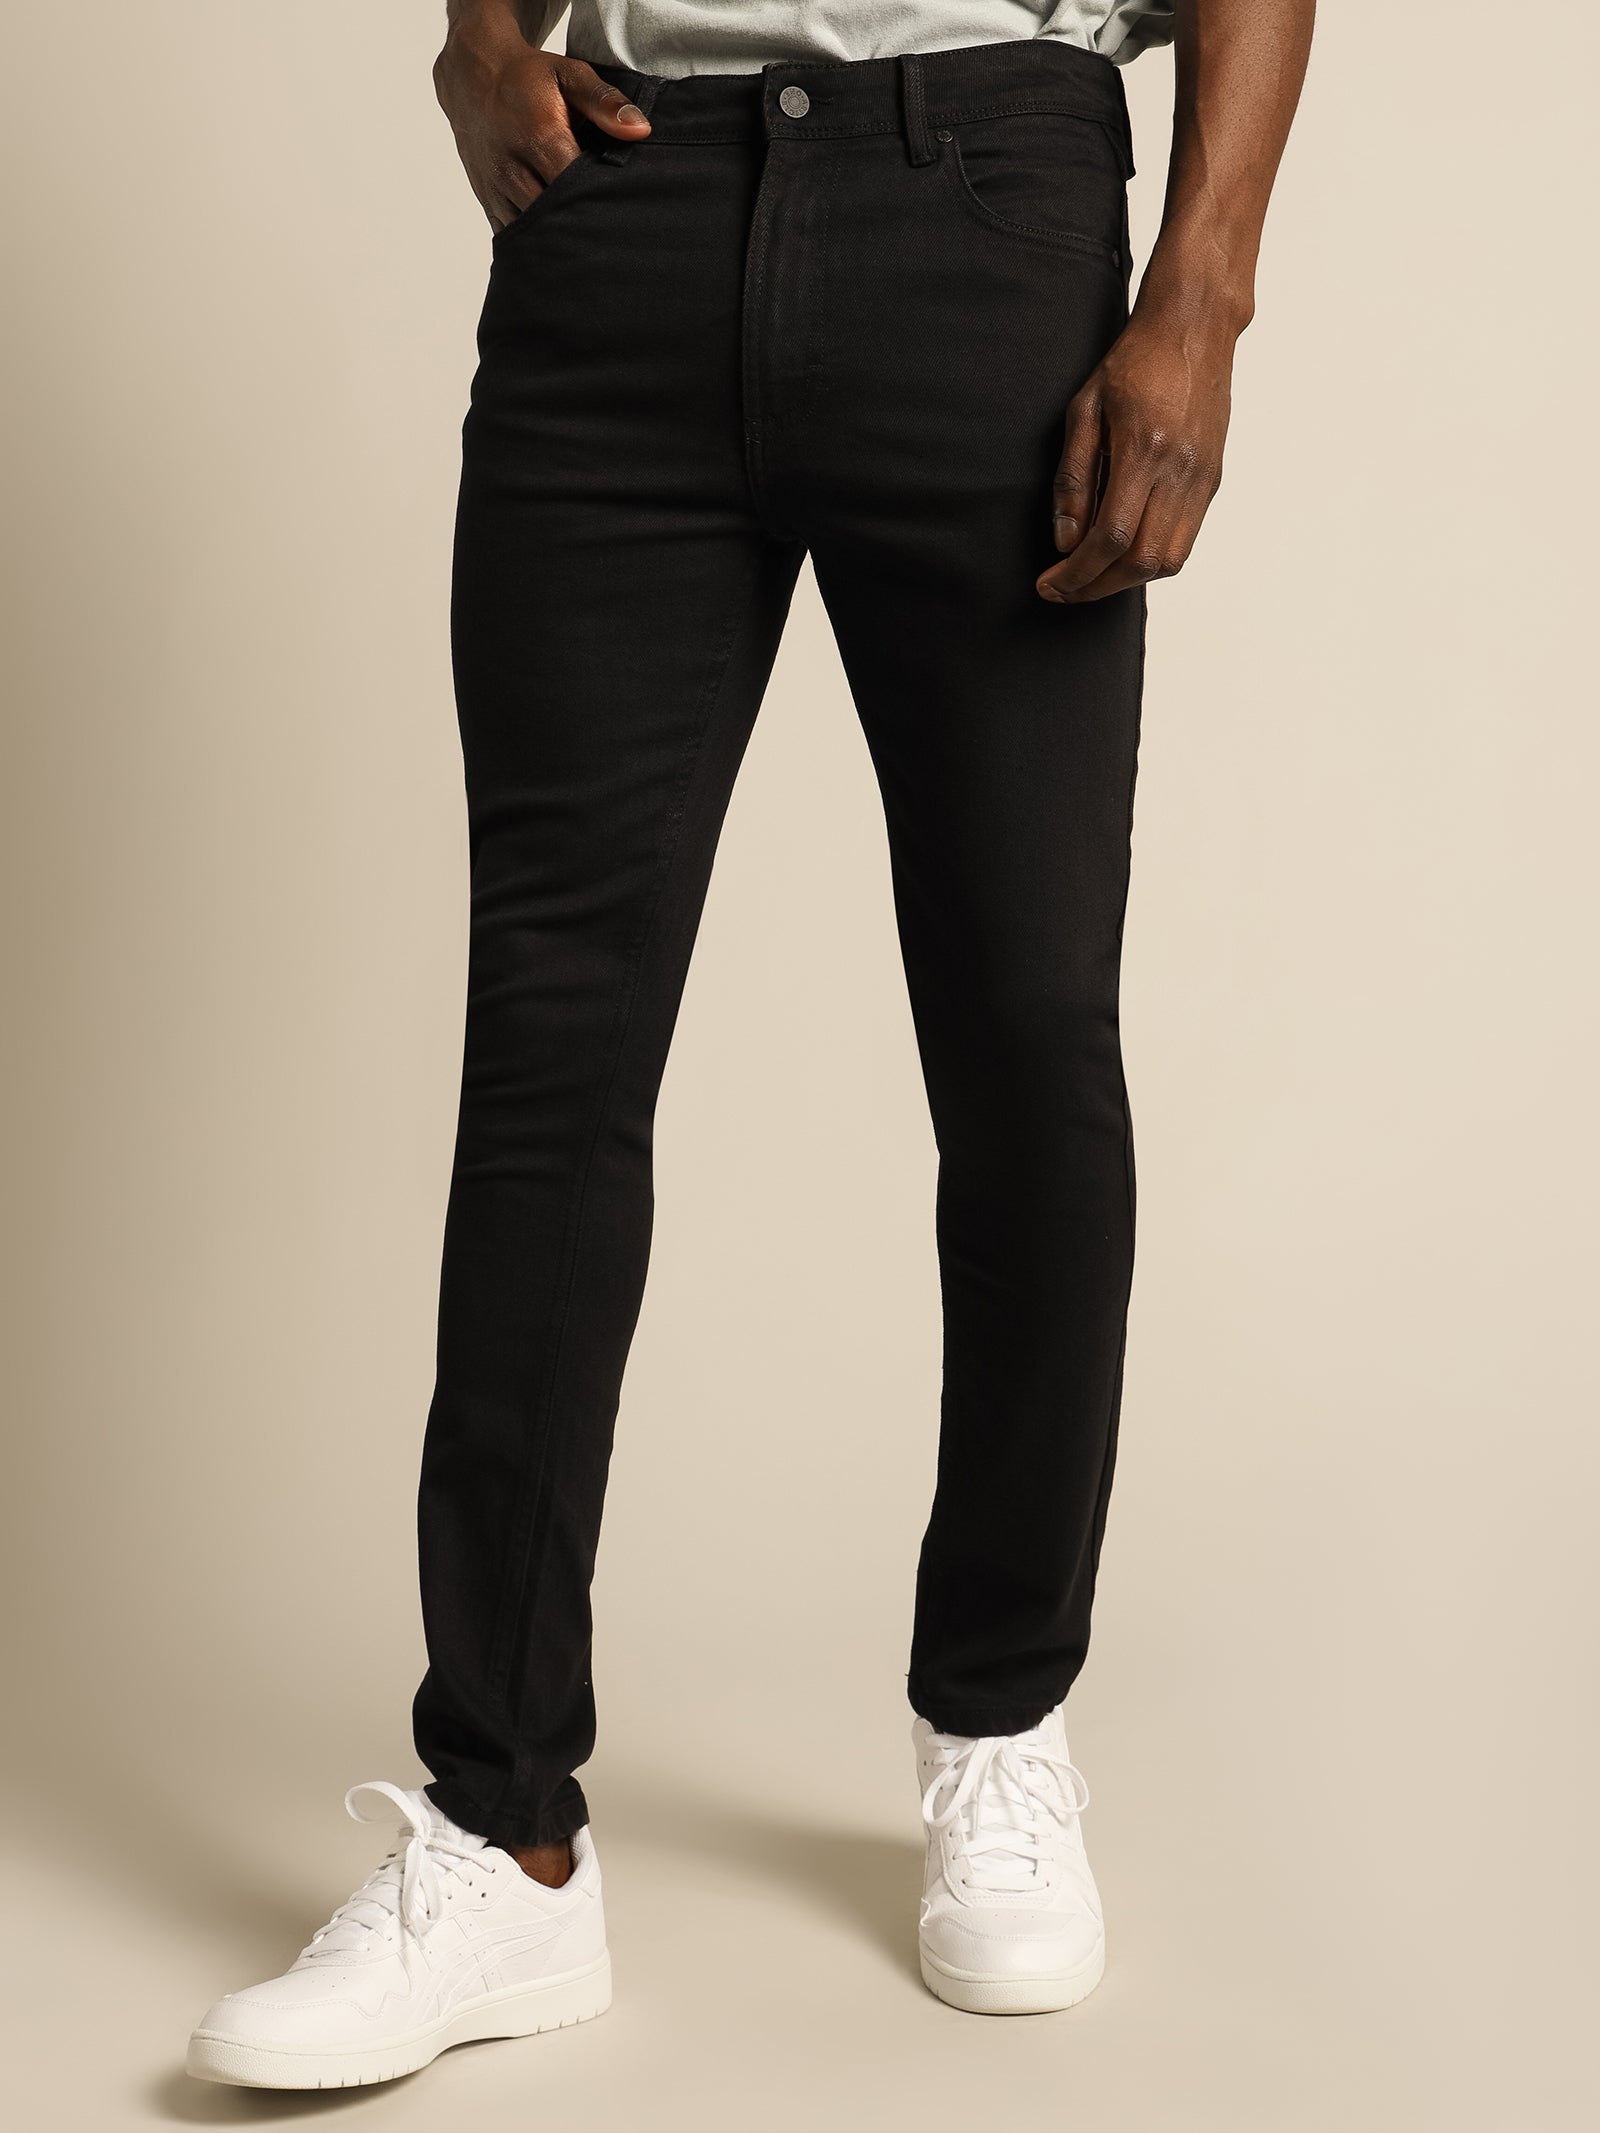 Zane Skinny Jeans in Black - Glue Store